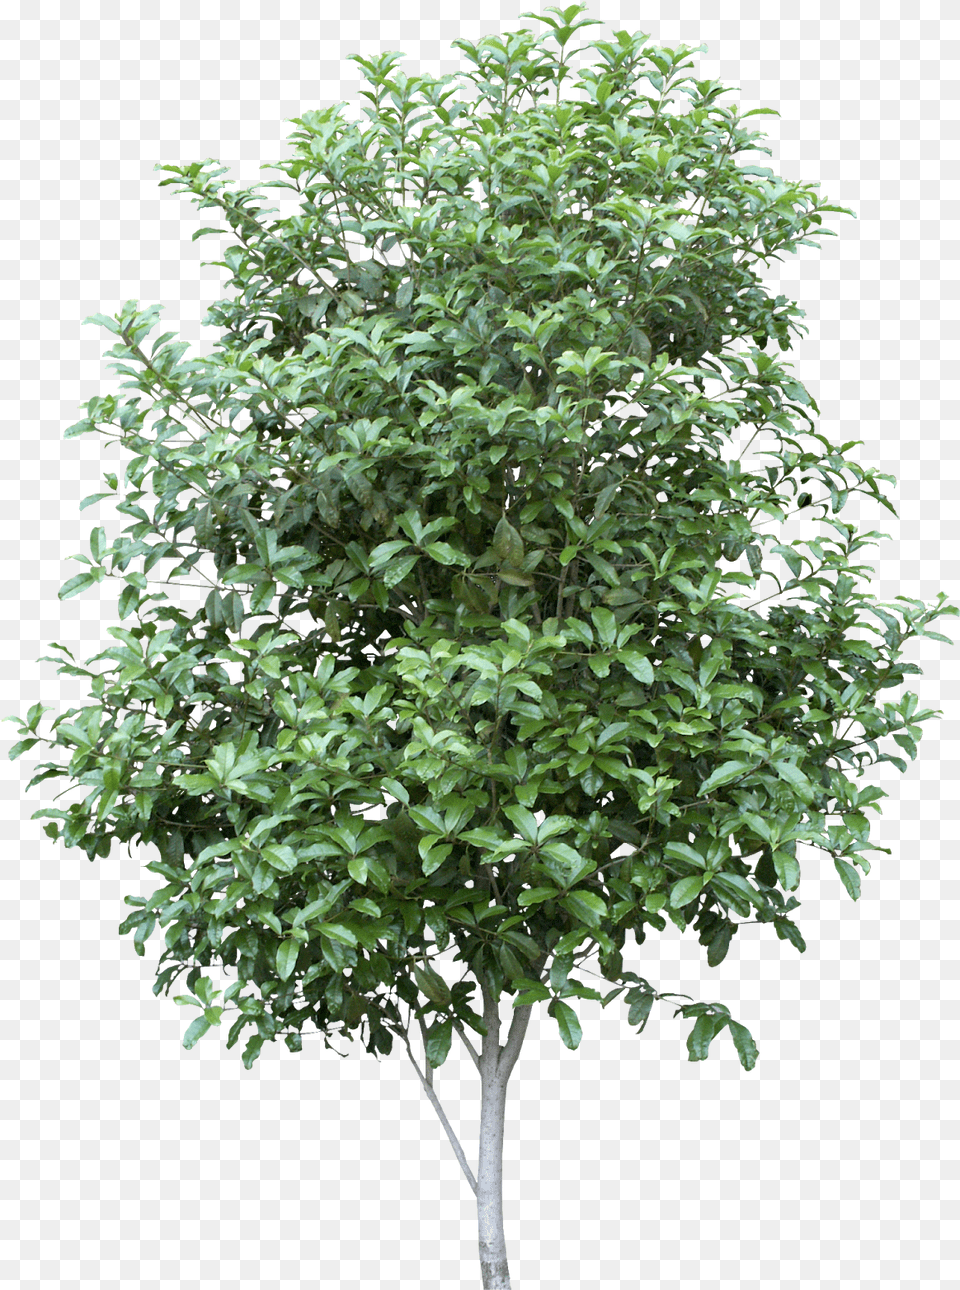 Bay Tree, Leaf, Plant, Vegetation, Potted Plant Free Png